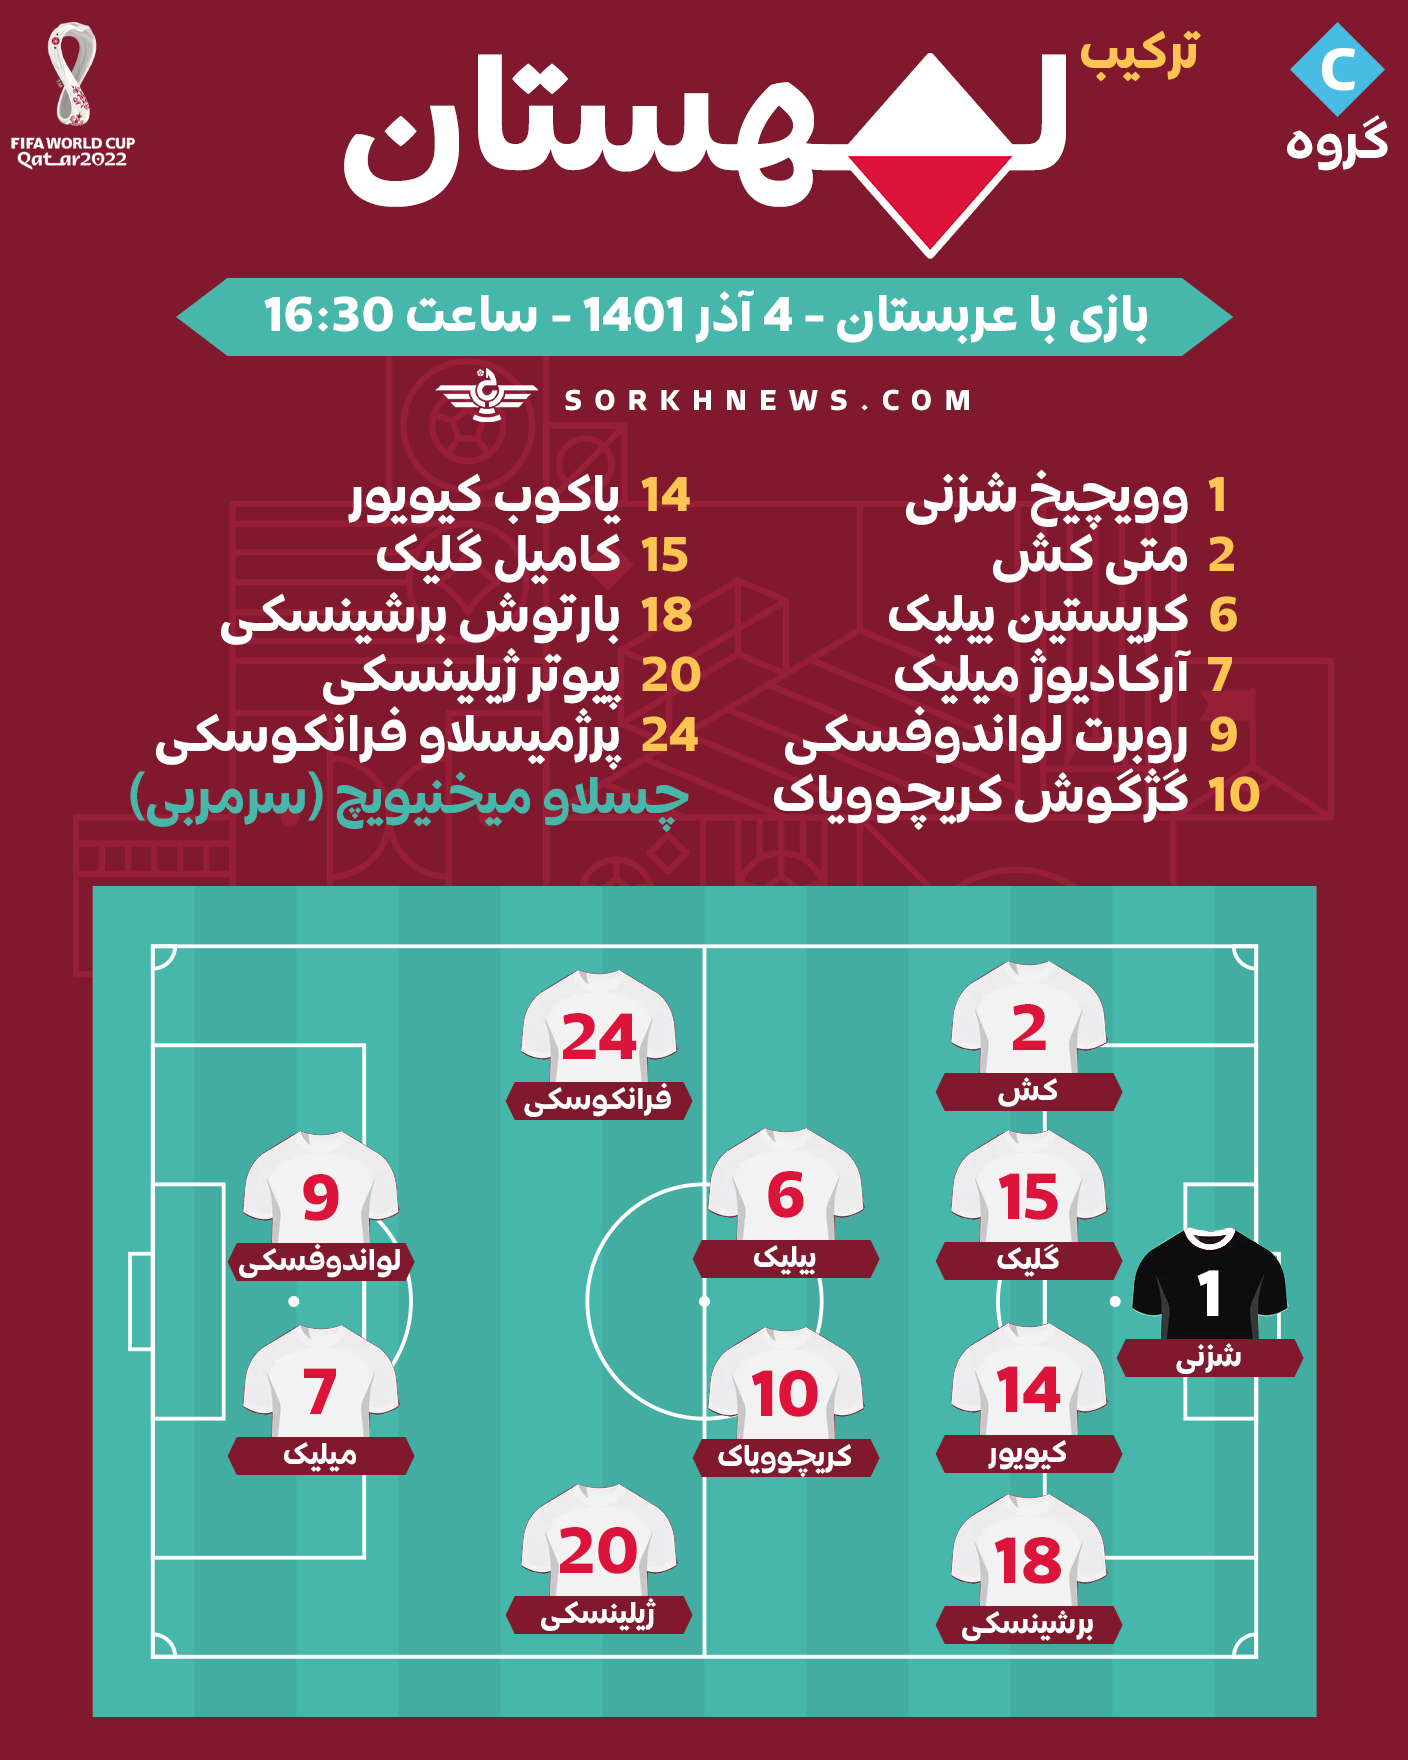 شماتیک ترکیب تیم ملی فوتبال لهستان در مقابل تیم ملی فوتبال عربستان